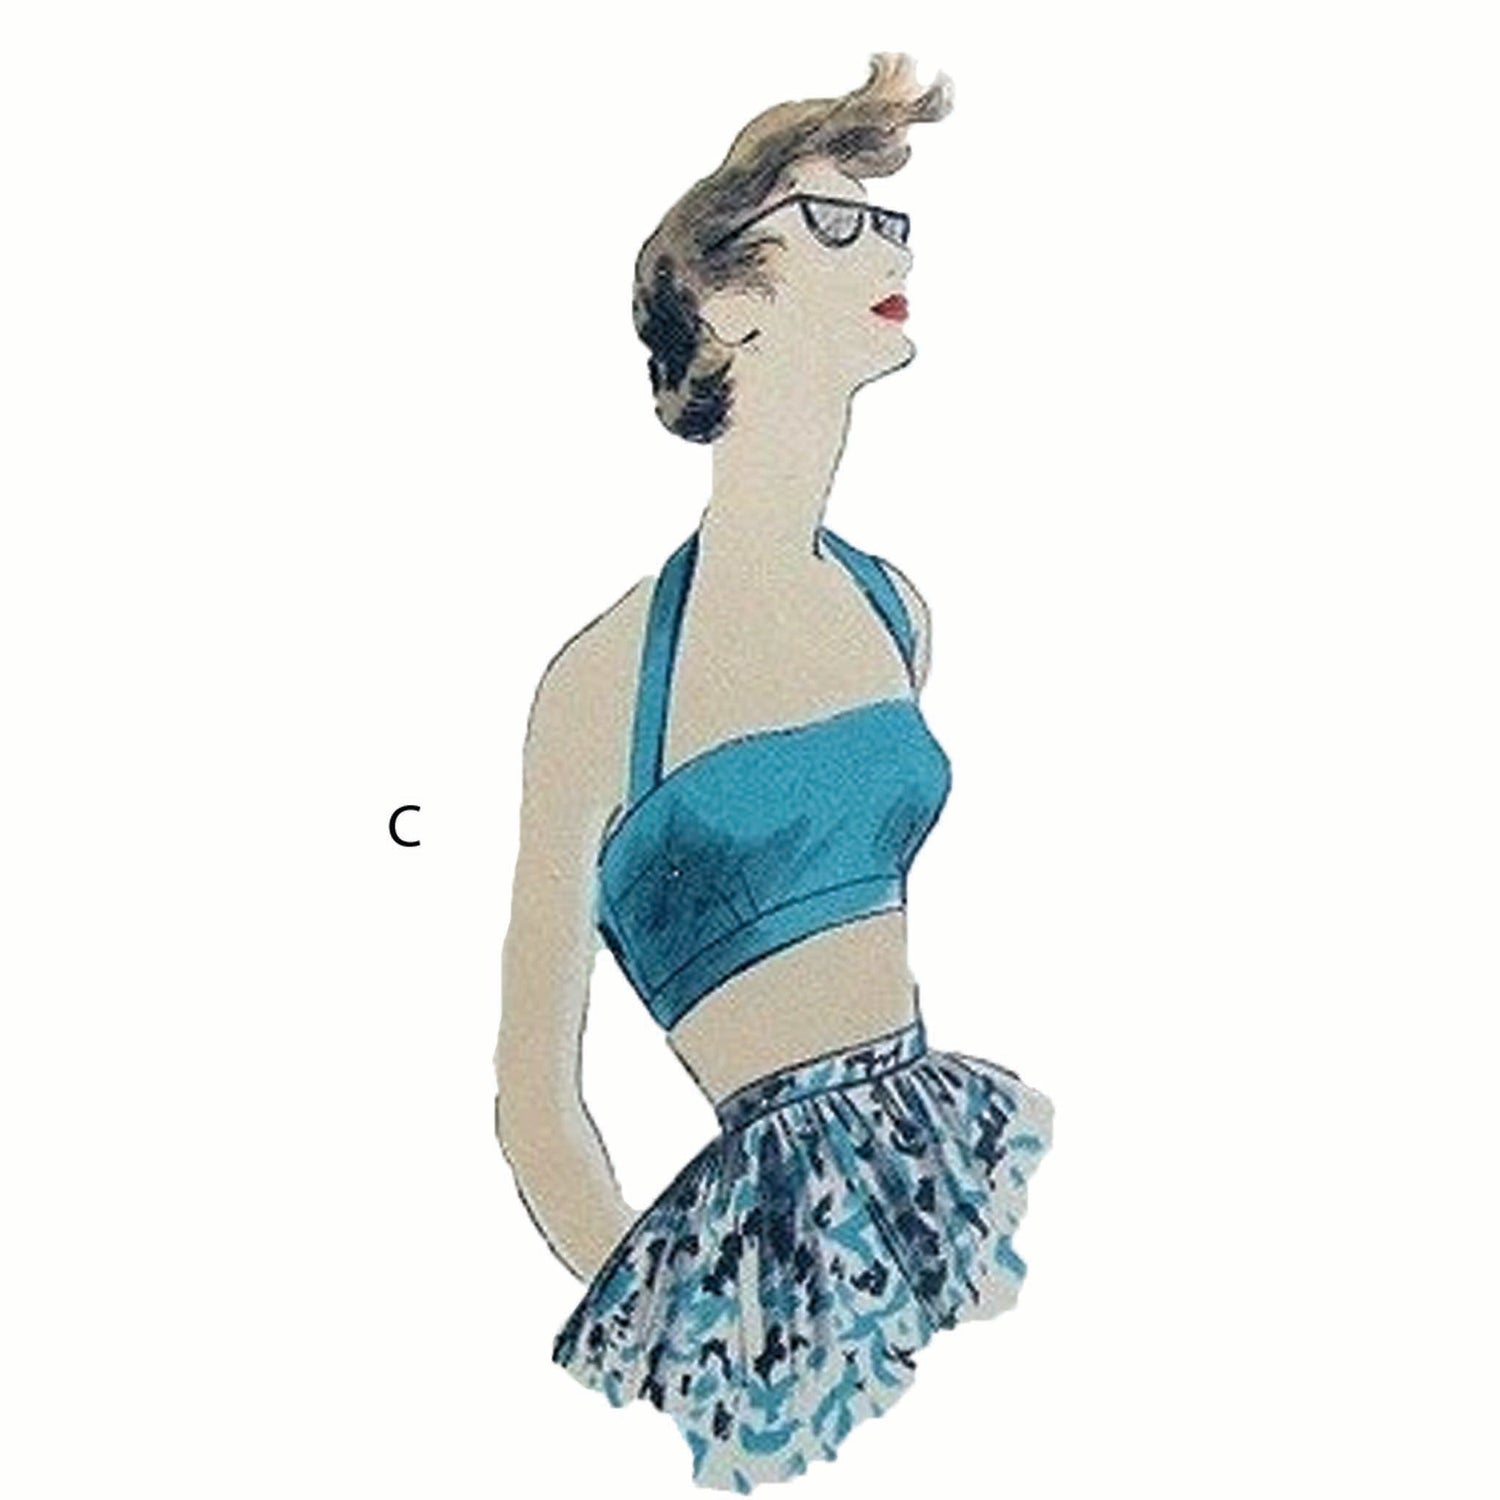 Women's Bras, Tops, Rockabilly, Vintage 1950s Sewing Pattern